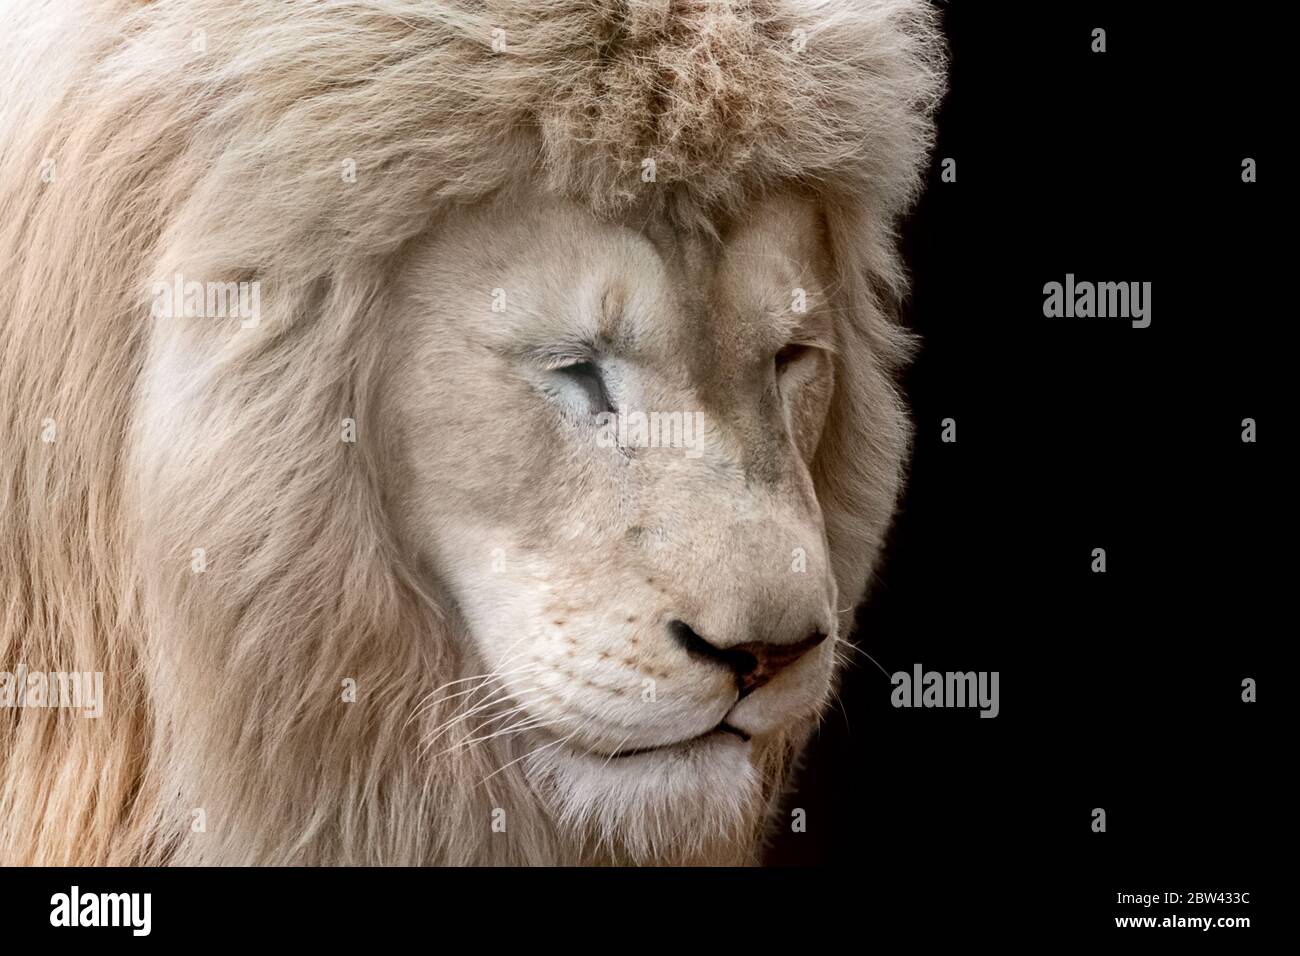 Ritratto con leone bianco, guarda verso il basso a destra con occhi chiusi, vista ravvicinata isolata con sfondo nero. Animali selvatici, gatto grande Foto Stock